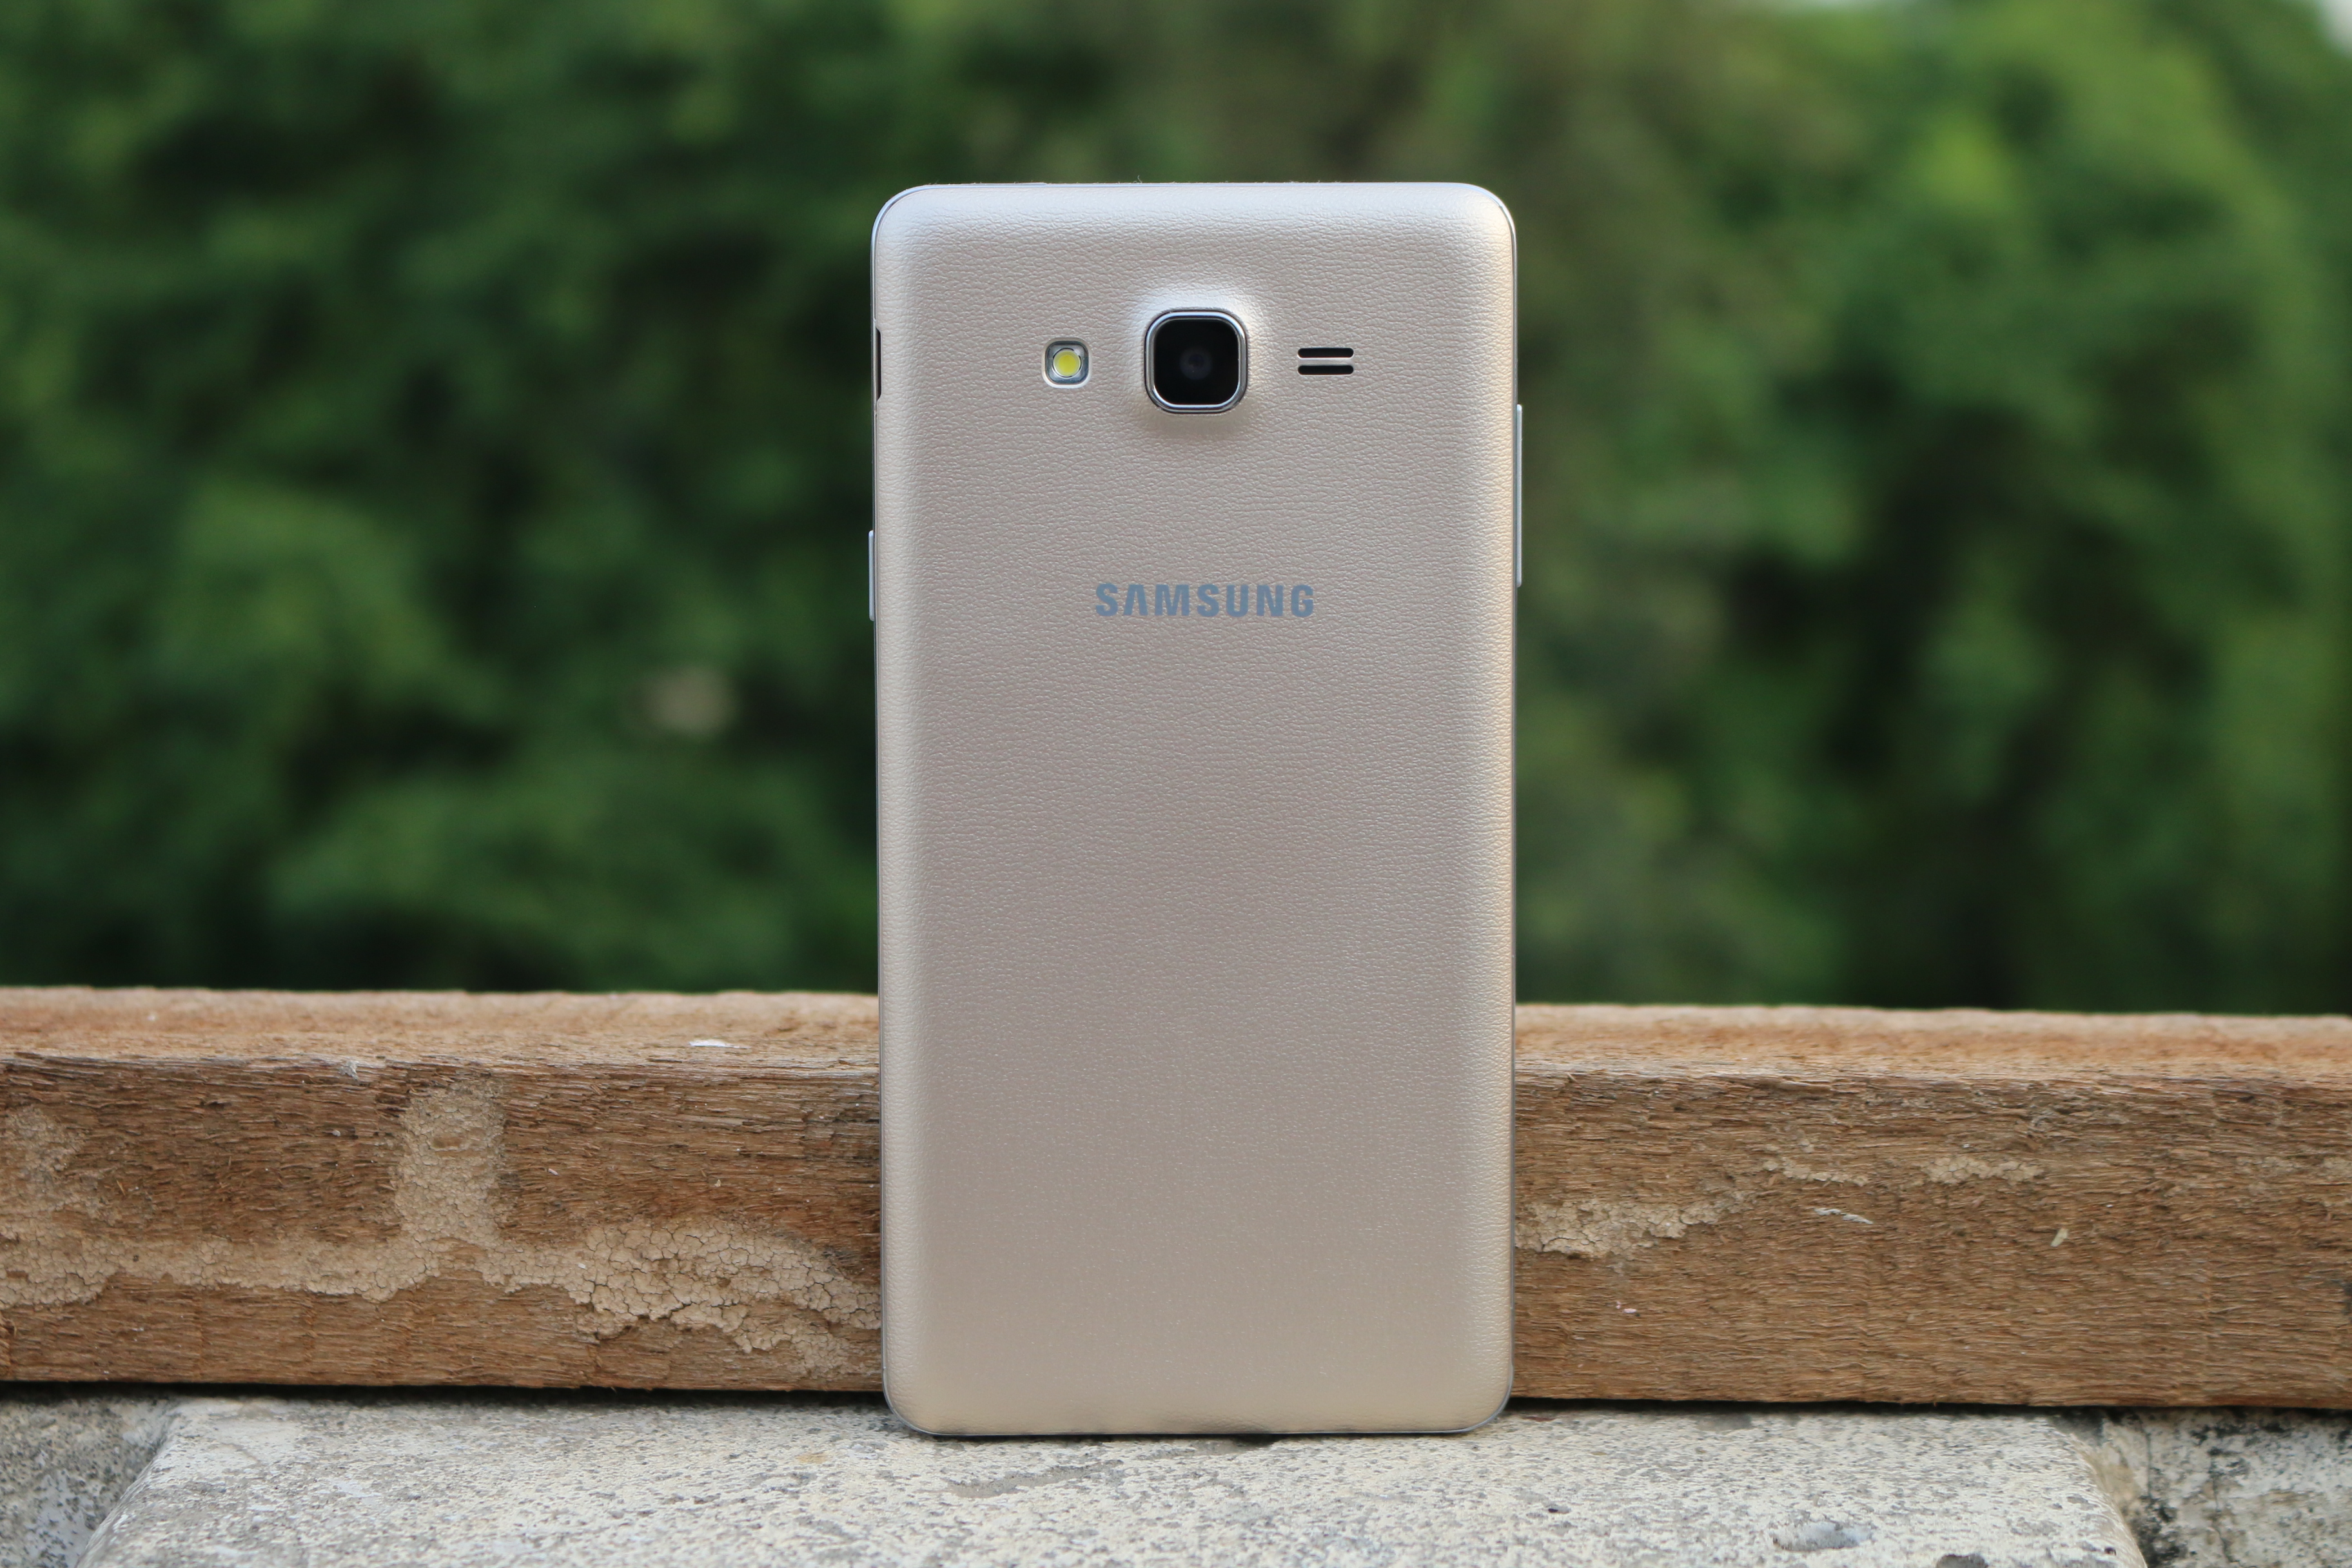 Domande frequenti, pro e contro, domande e risposte degli utenti su Samsung Galaxy On7 Pro